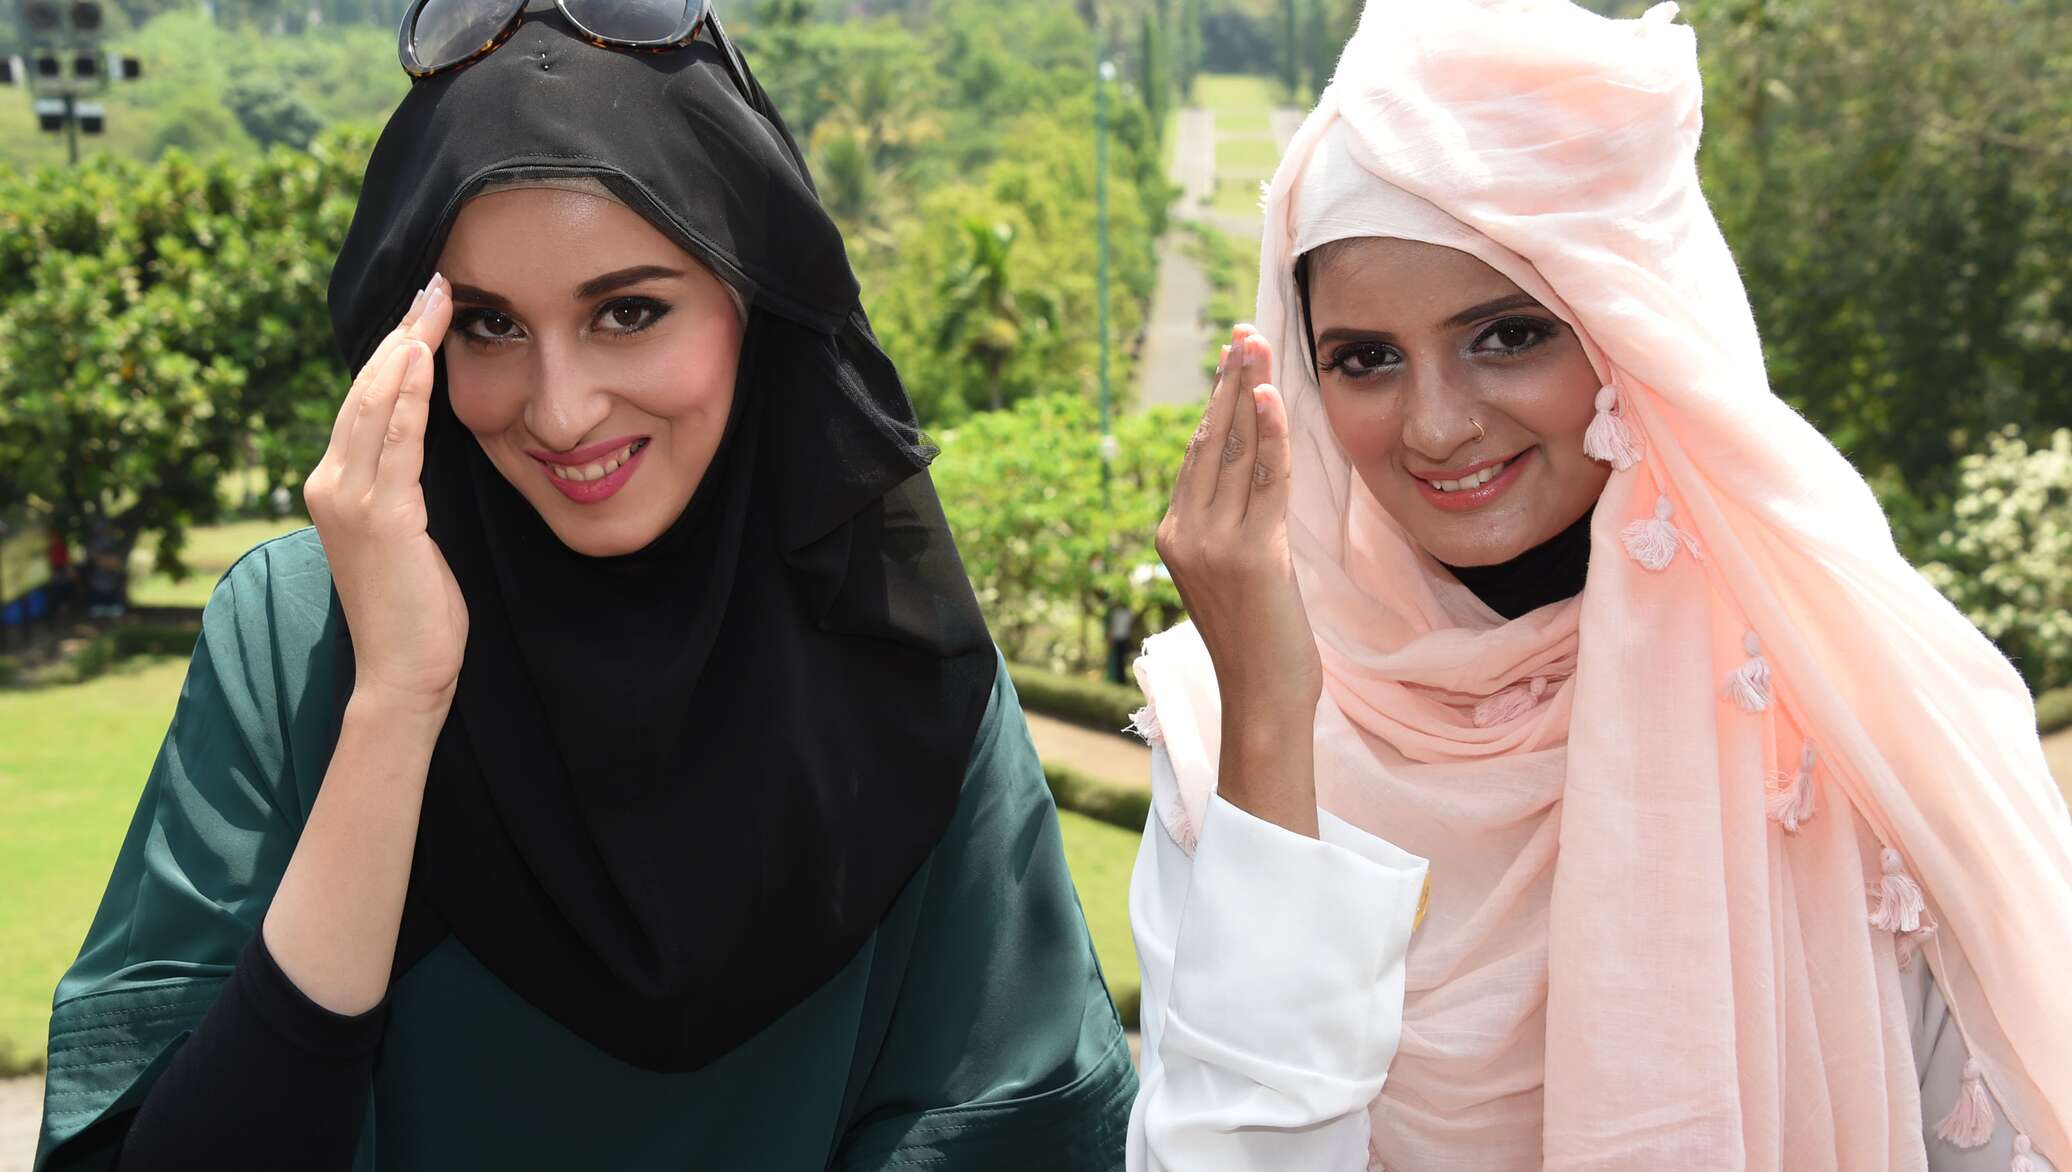 Мусульманских волосатые. Мусульманские женщины. Мусульманские девушки фото. Индонезия девушки в хиджабе. Самый красивый девушка в мире мусульманка.